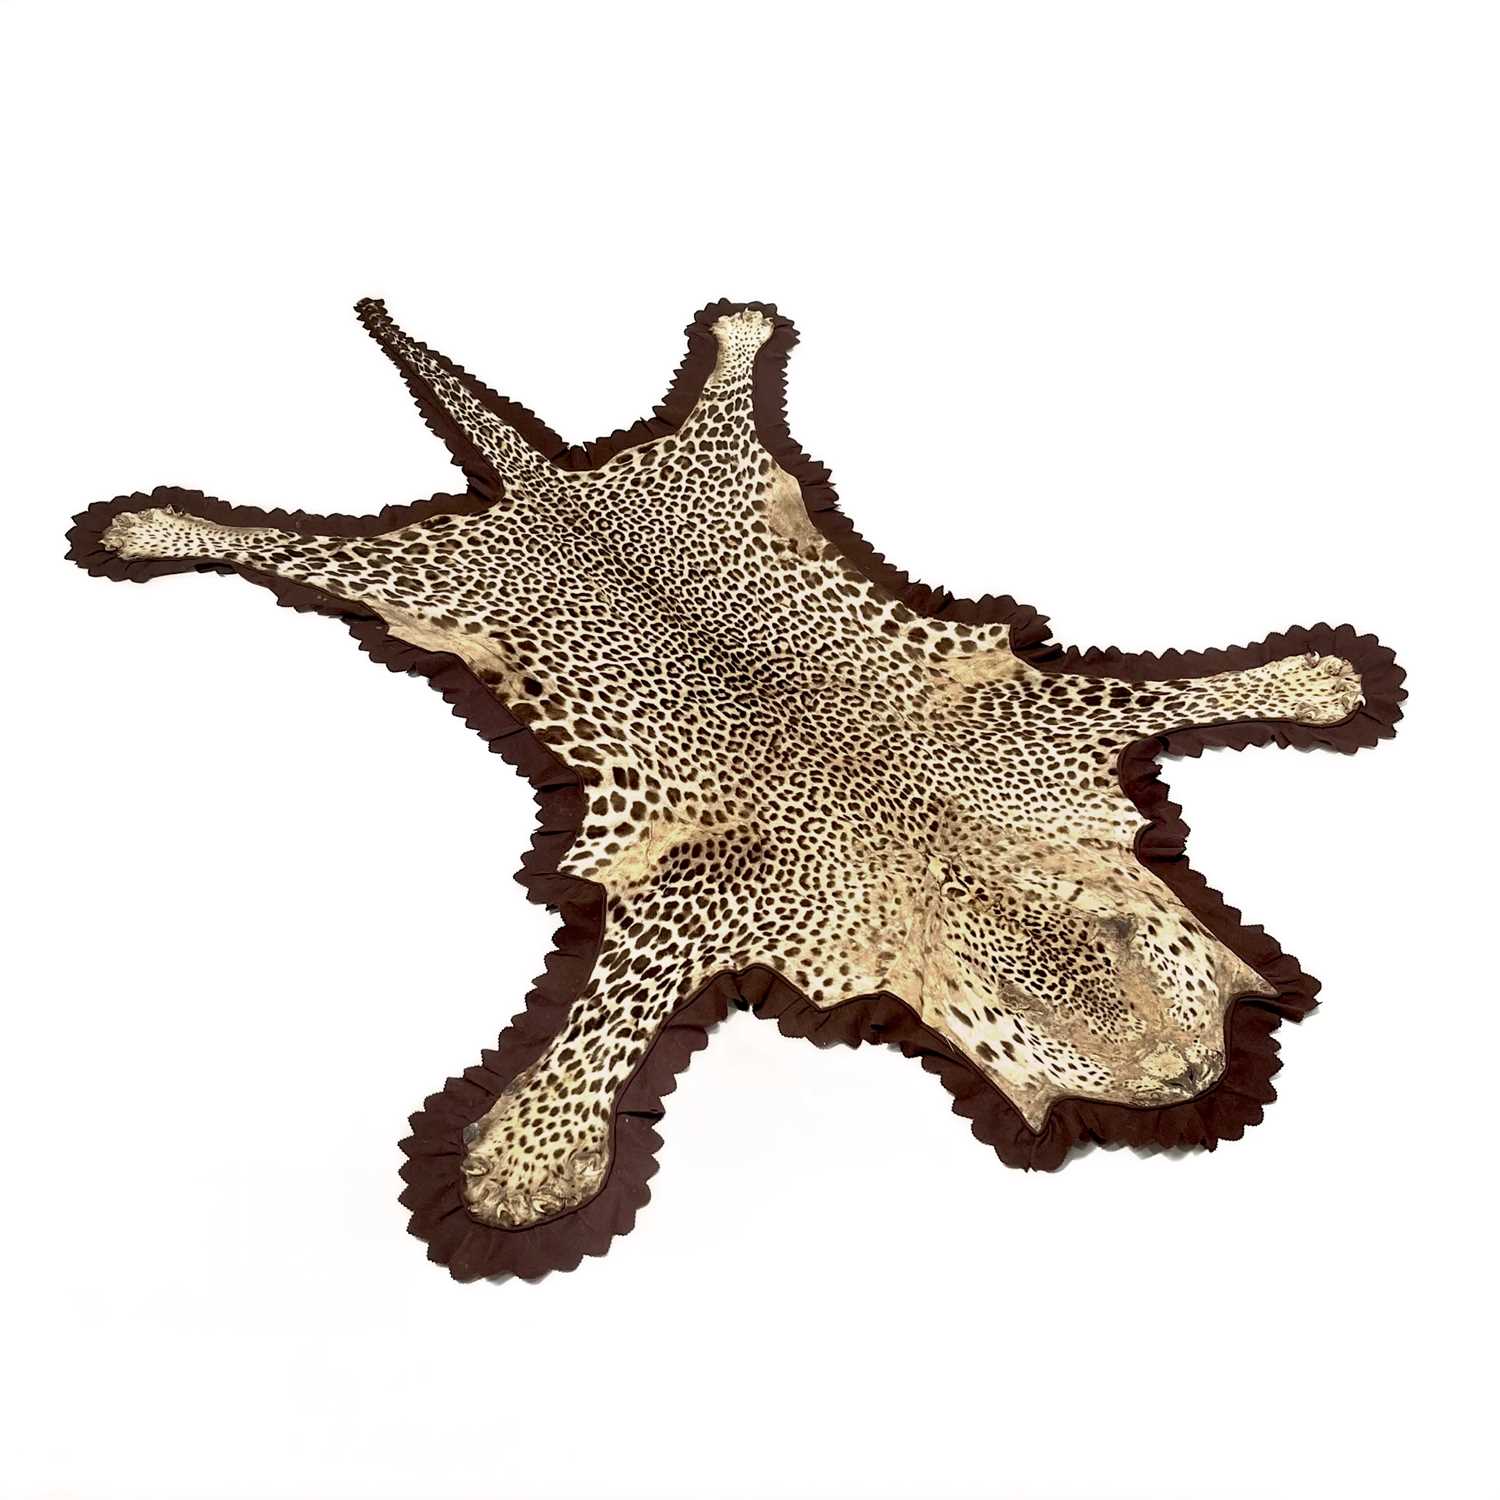 A Rowland Ward leopard skin taxidermy rug, brown felt backing, original label, circa 1900